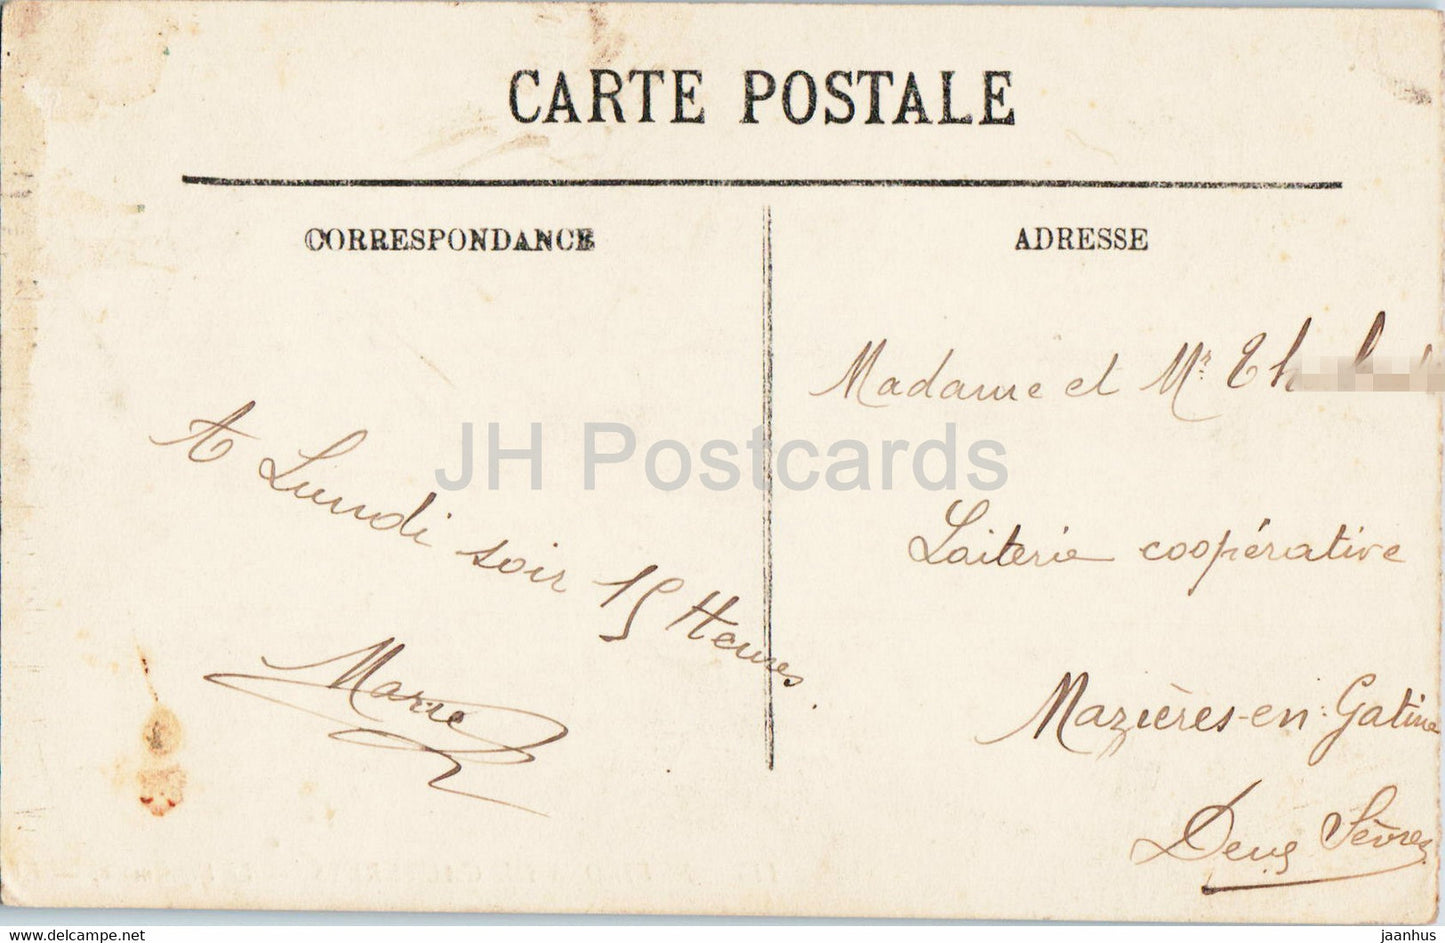 Environs de Cauterets - Le Vignemale - 115 - old postcard - 1912 - France - used